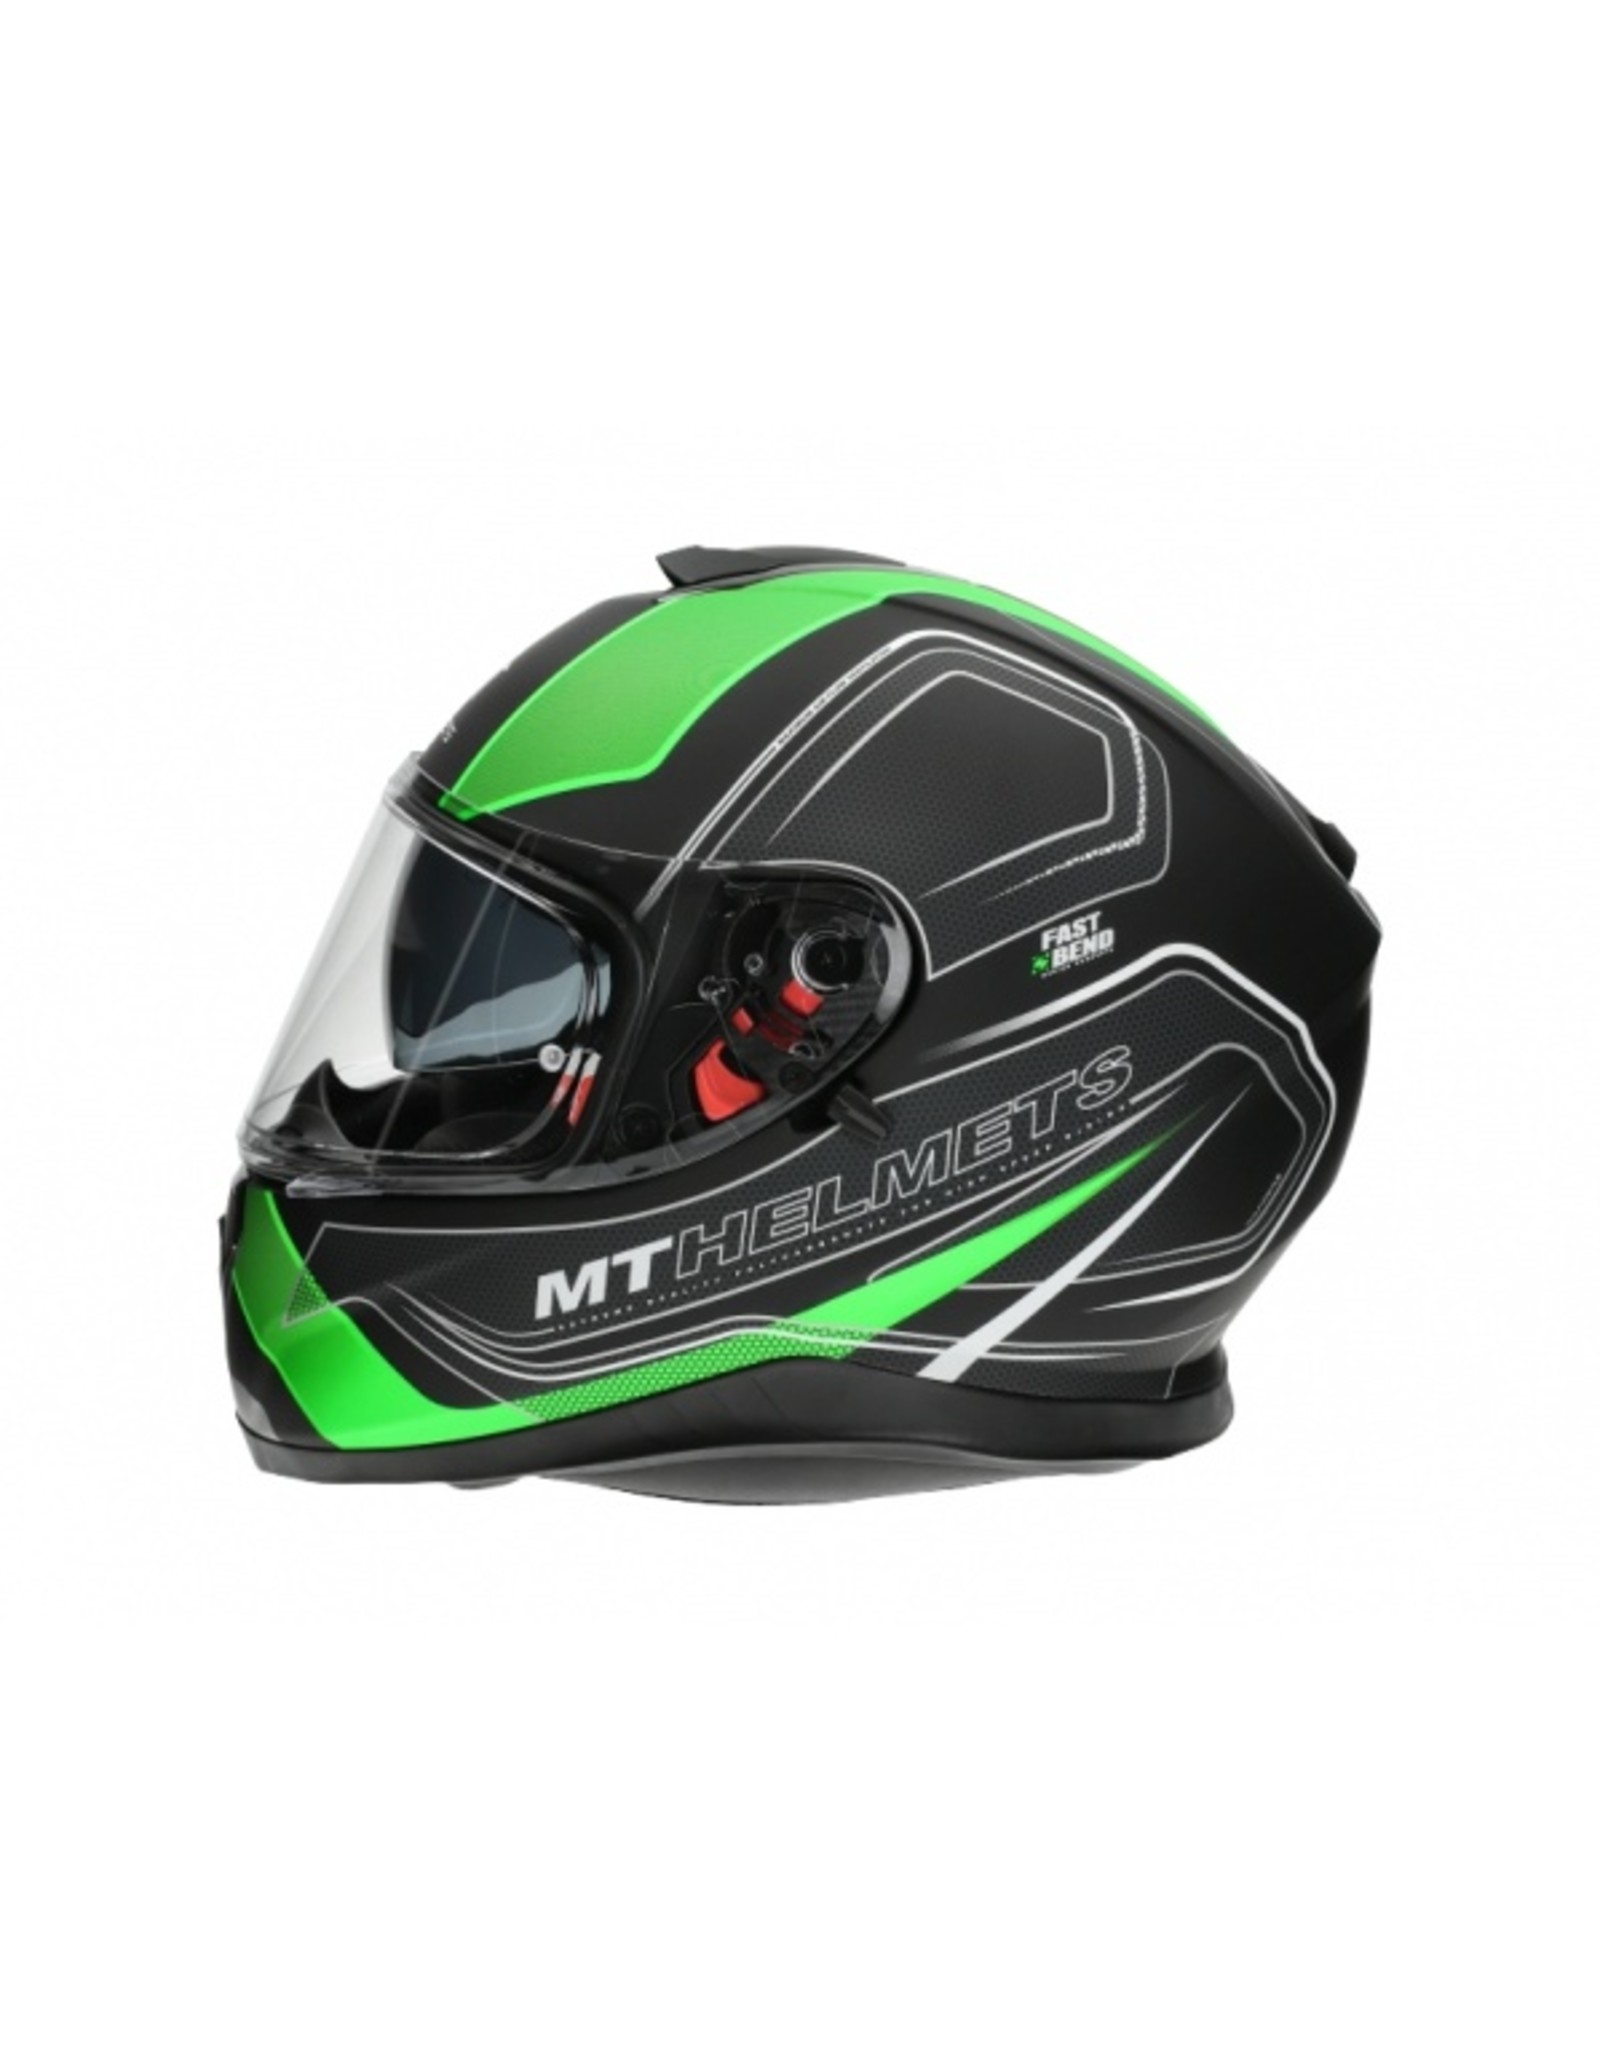 MT Helmets MT helmets Thunder 3 SV Matt green / black